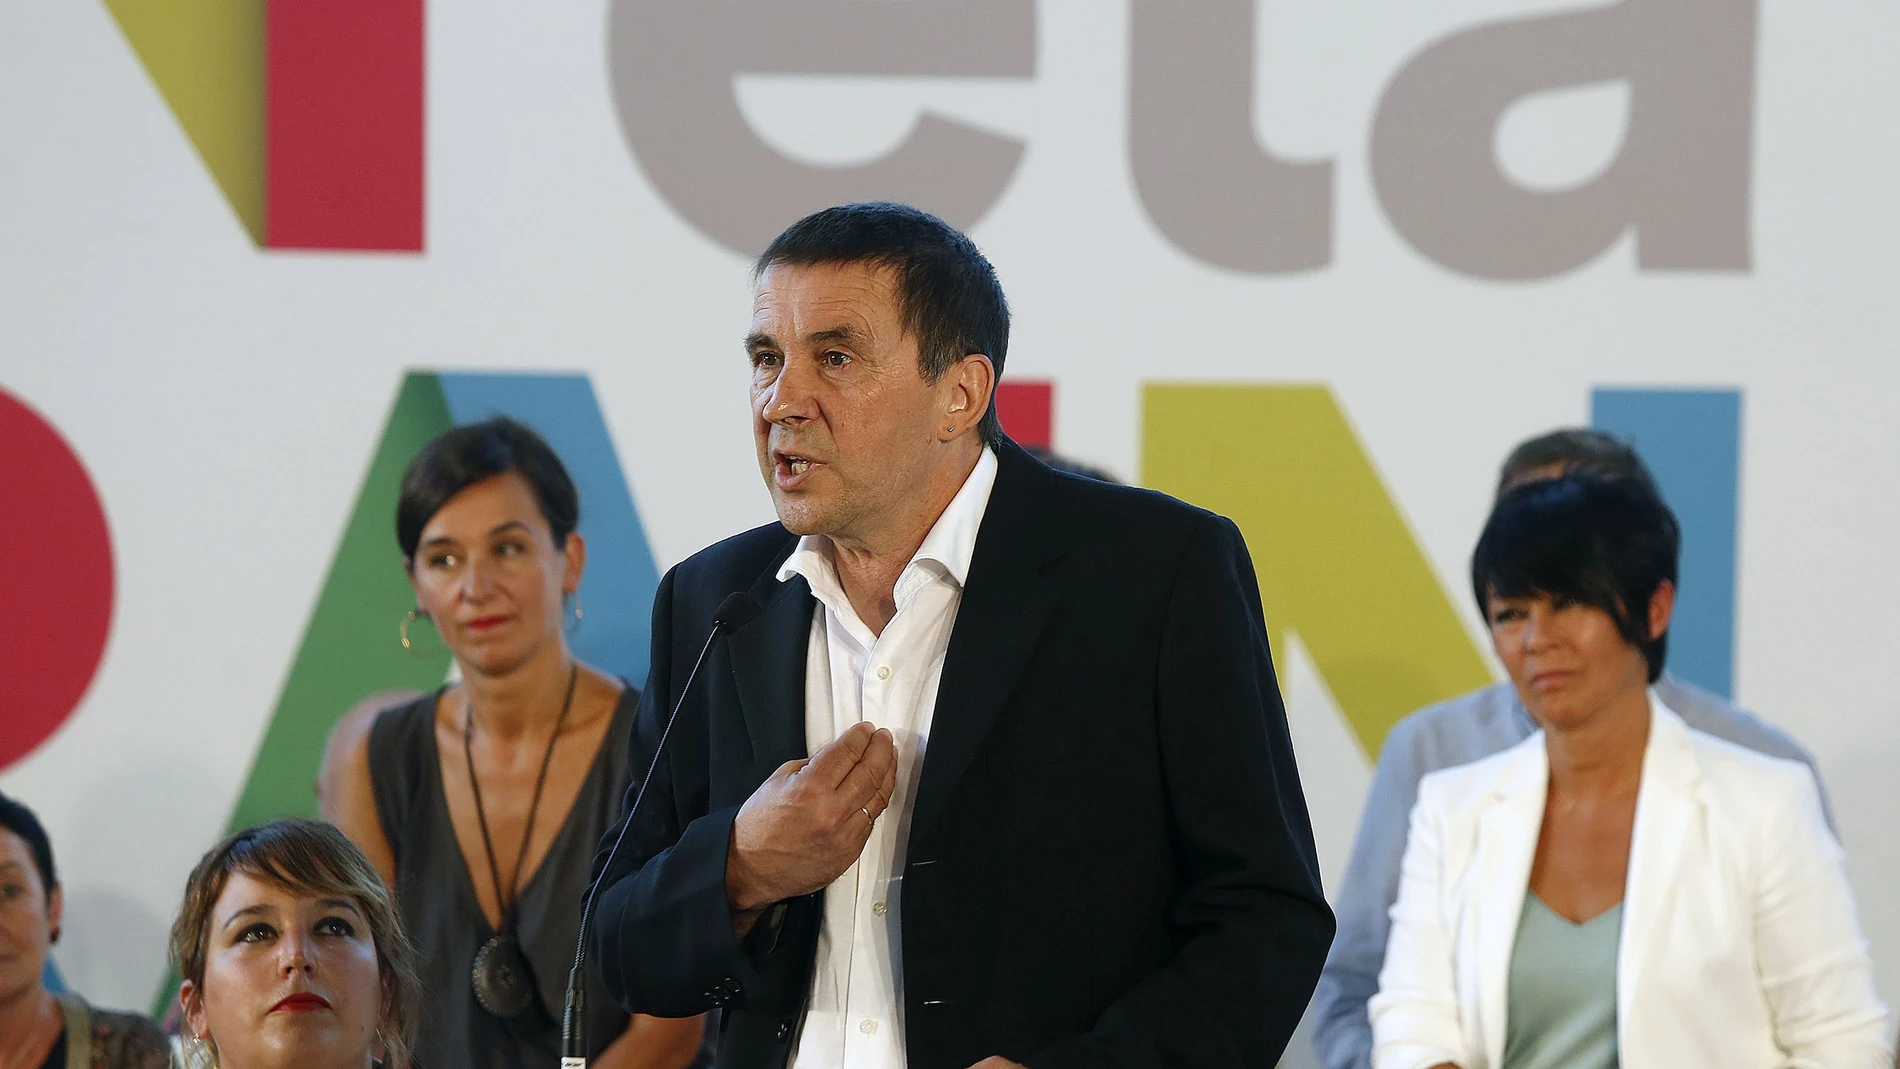 El candidato al lehendakari por EH Bildu, Arnaldo Otegi, durante su intervención en la presentación de la propuesta política de la coalición abertzale